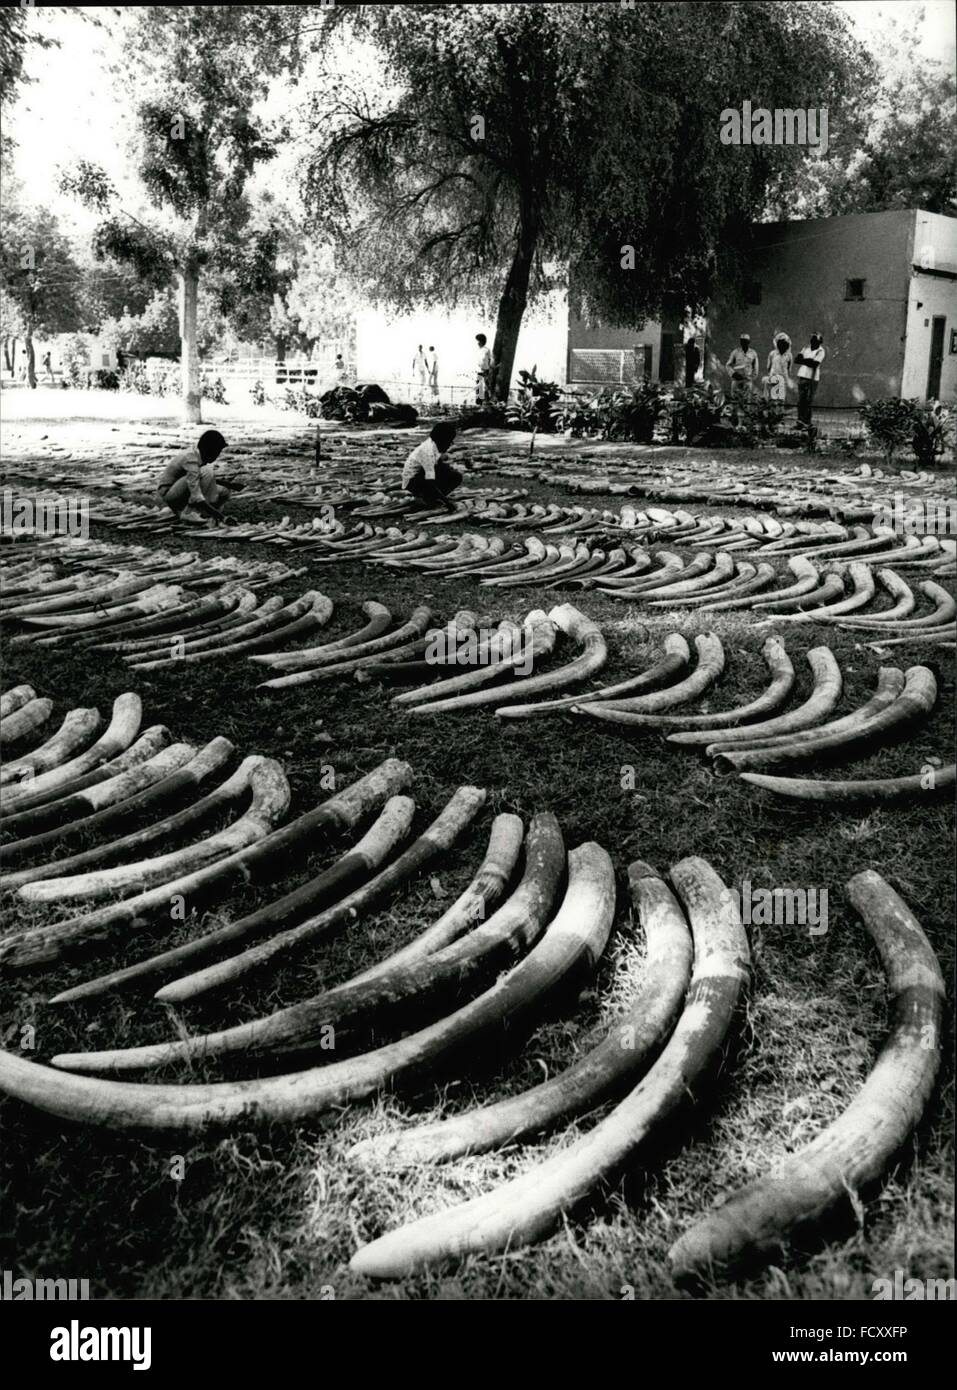 1962 - 1181 Elefanten für Gewinn von skrupellosen Schmugglern im sudanesischen Hafen Port Sudan vor kurzem sterben musste Polizei fand 11,9 Tonnen Elfenbein, die den Wert von rund 1 Million Dollar ist. Schmuggler hatte versucht, ihren Gewinn durch diese 2362-Elefanten-Stoßzähne zu machen. 1181 Elefanten musste sterben. Später das Elfenbein werden auf den Umsatz im Sudan Hauptstadt Khartum. © Keystone Bilder USA/ZUMAPRESS.com/Alamy Live-Nachrichten Stockfoto